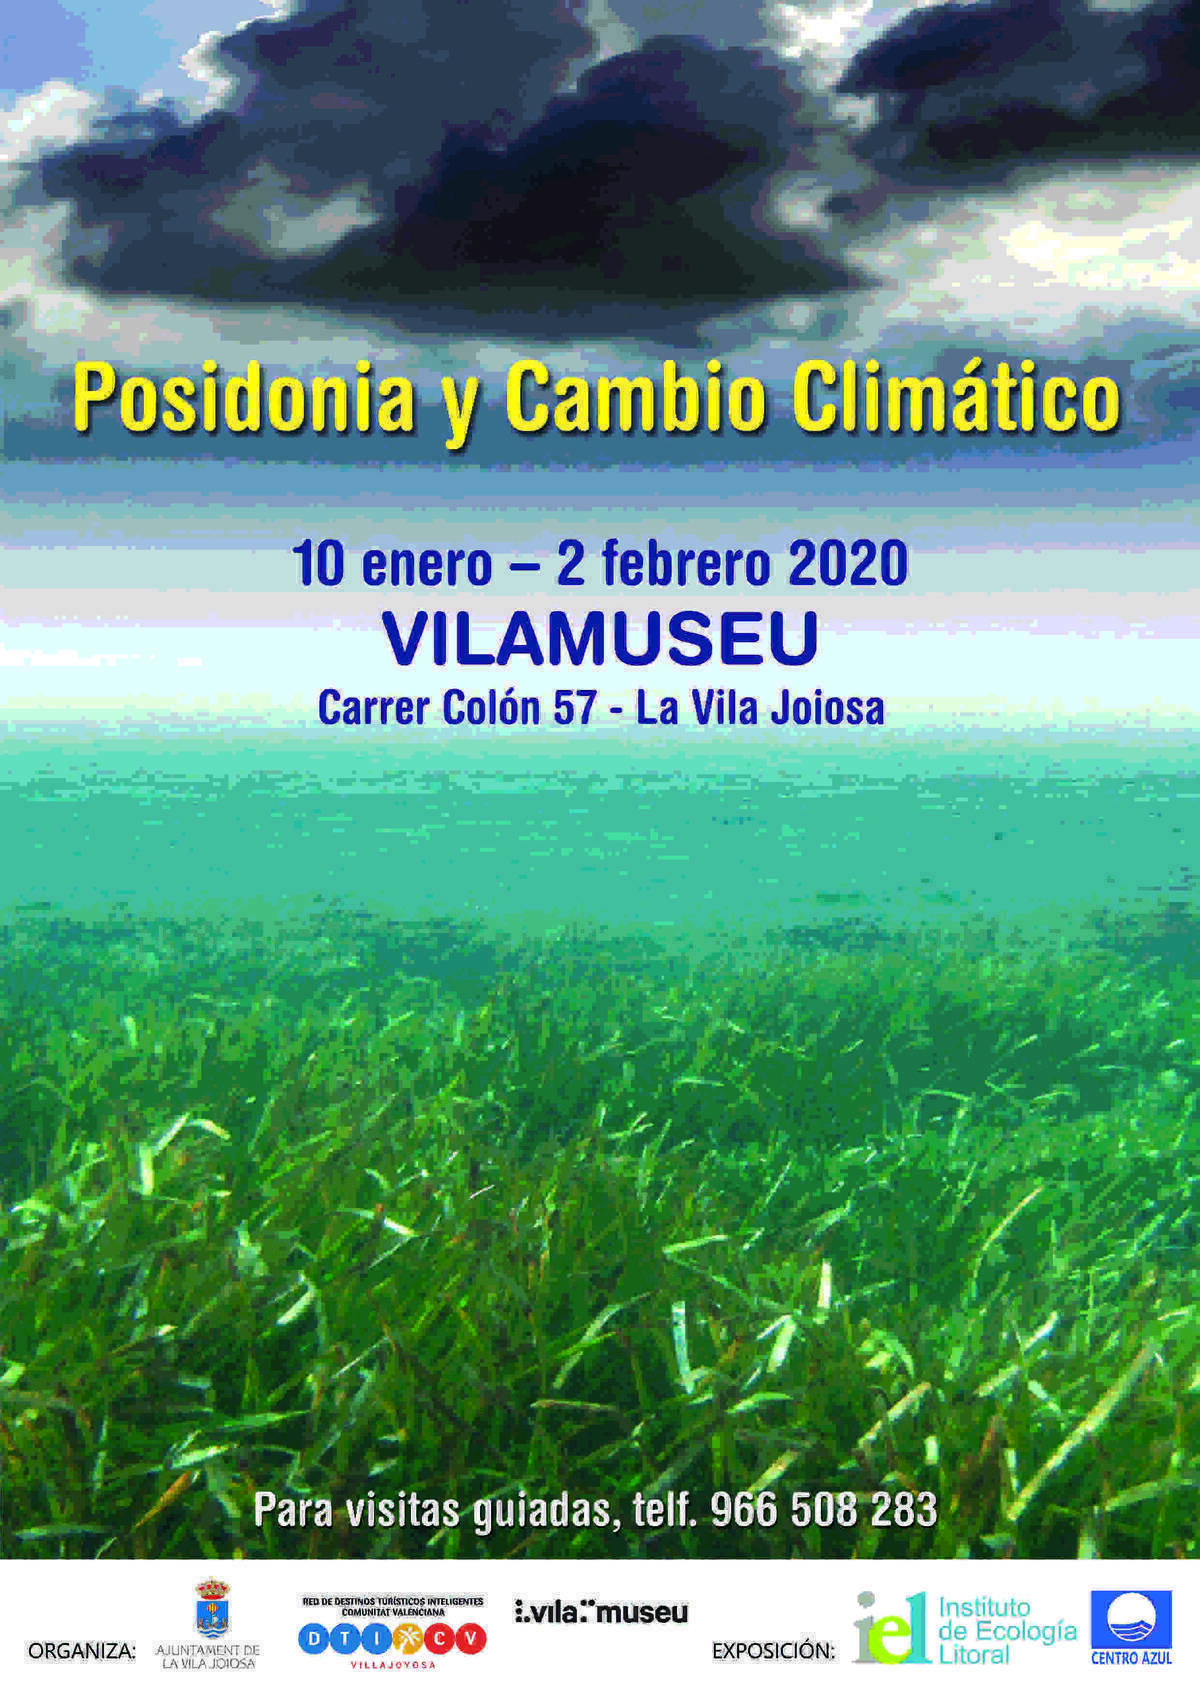 "Posidonia y Cambio Climático" del Instituto de Ecologia Litoral se expone en la Sede Universitaria de la Vila